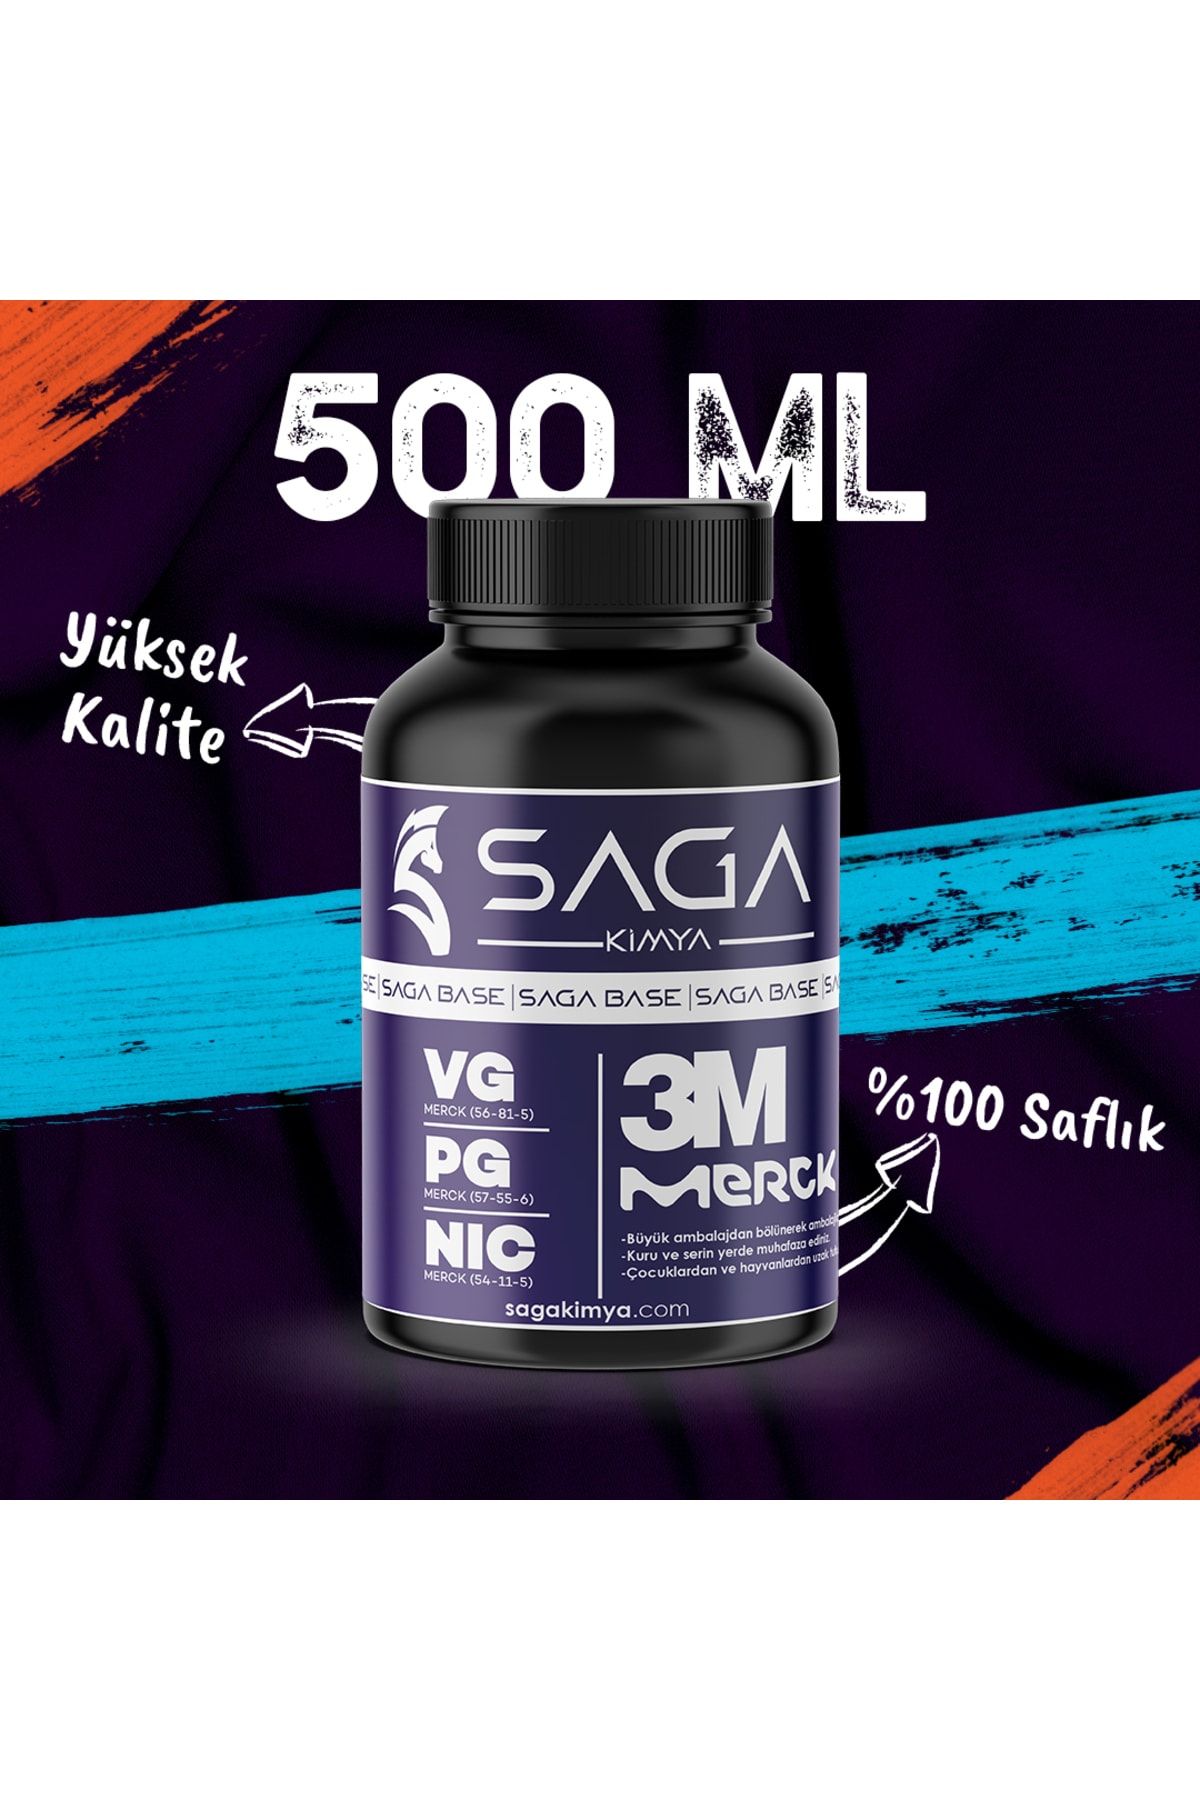 Saga Kimya 3m Merck NBase 500 ml 6 Mg 80/20 Vg/pg